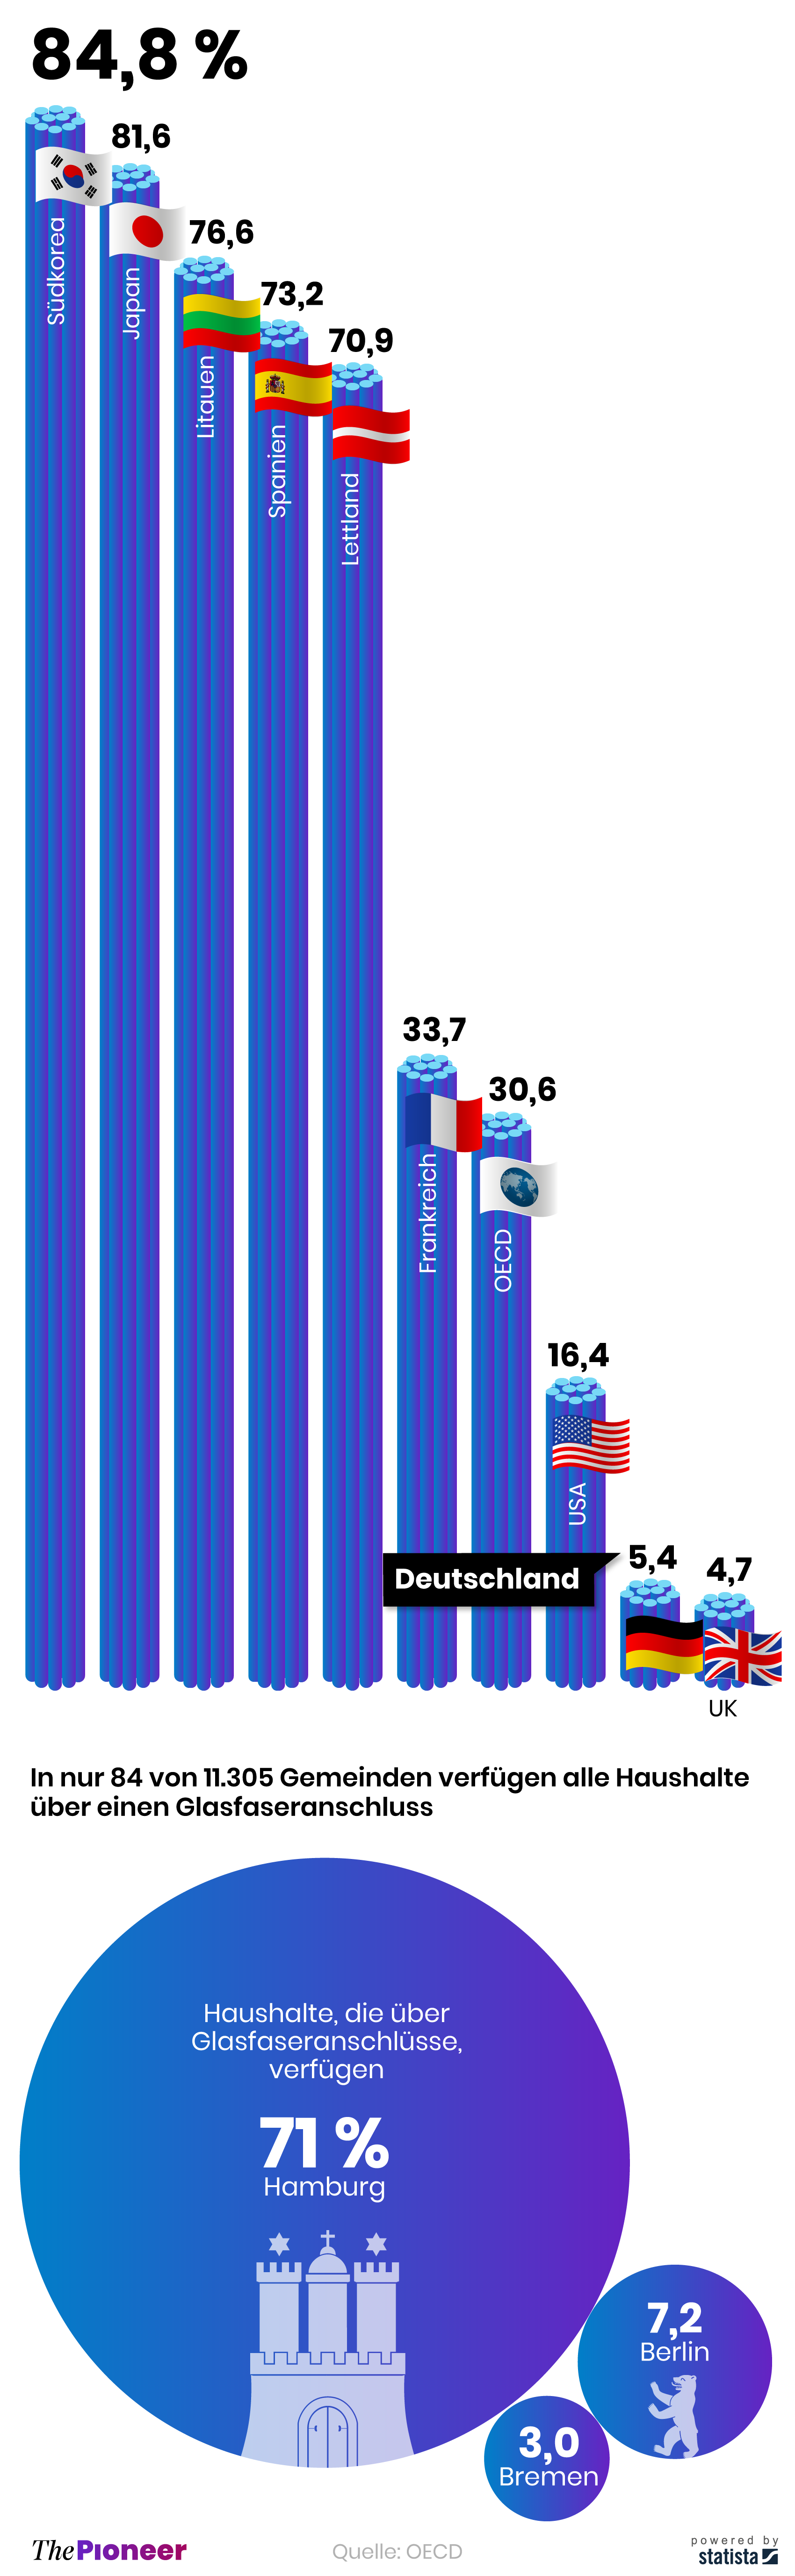 Schnelles Internet in Deutschland